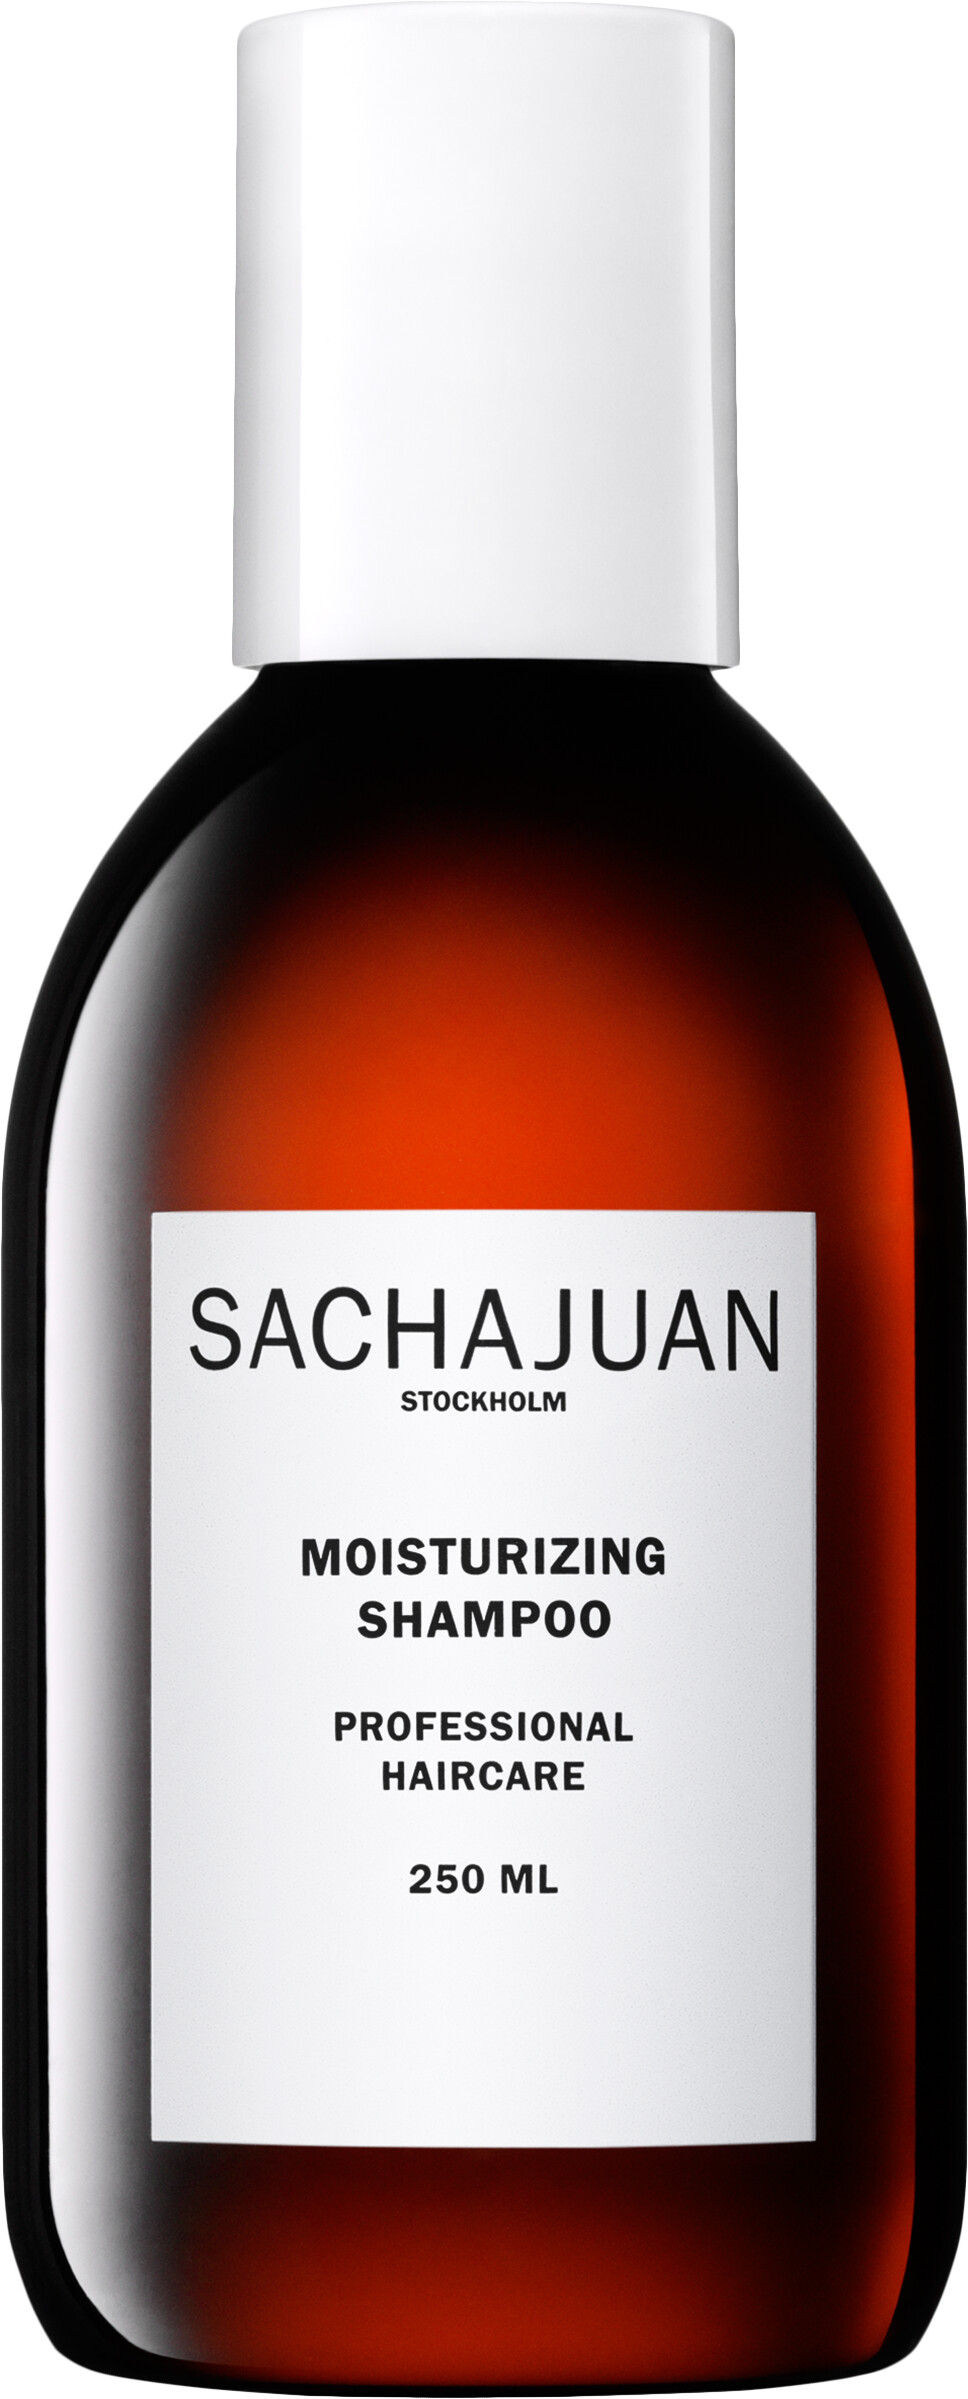 Sachajuan Moisturizing Shampoo 250ml